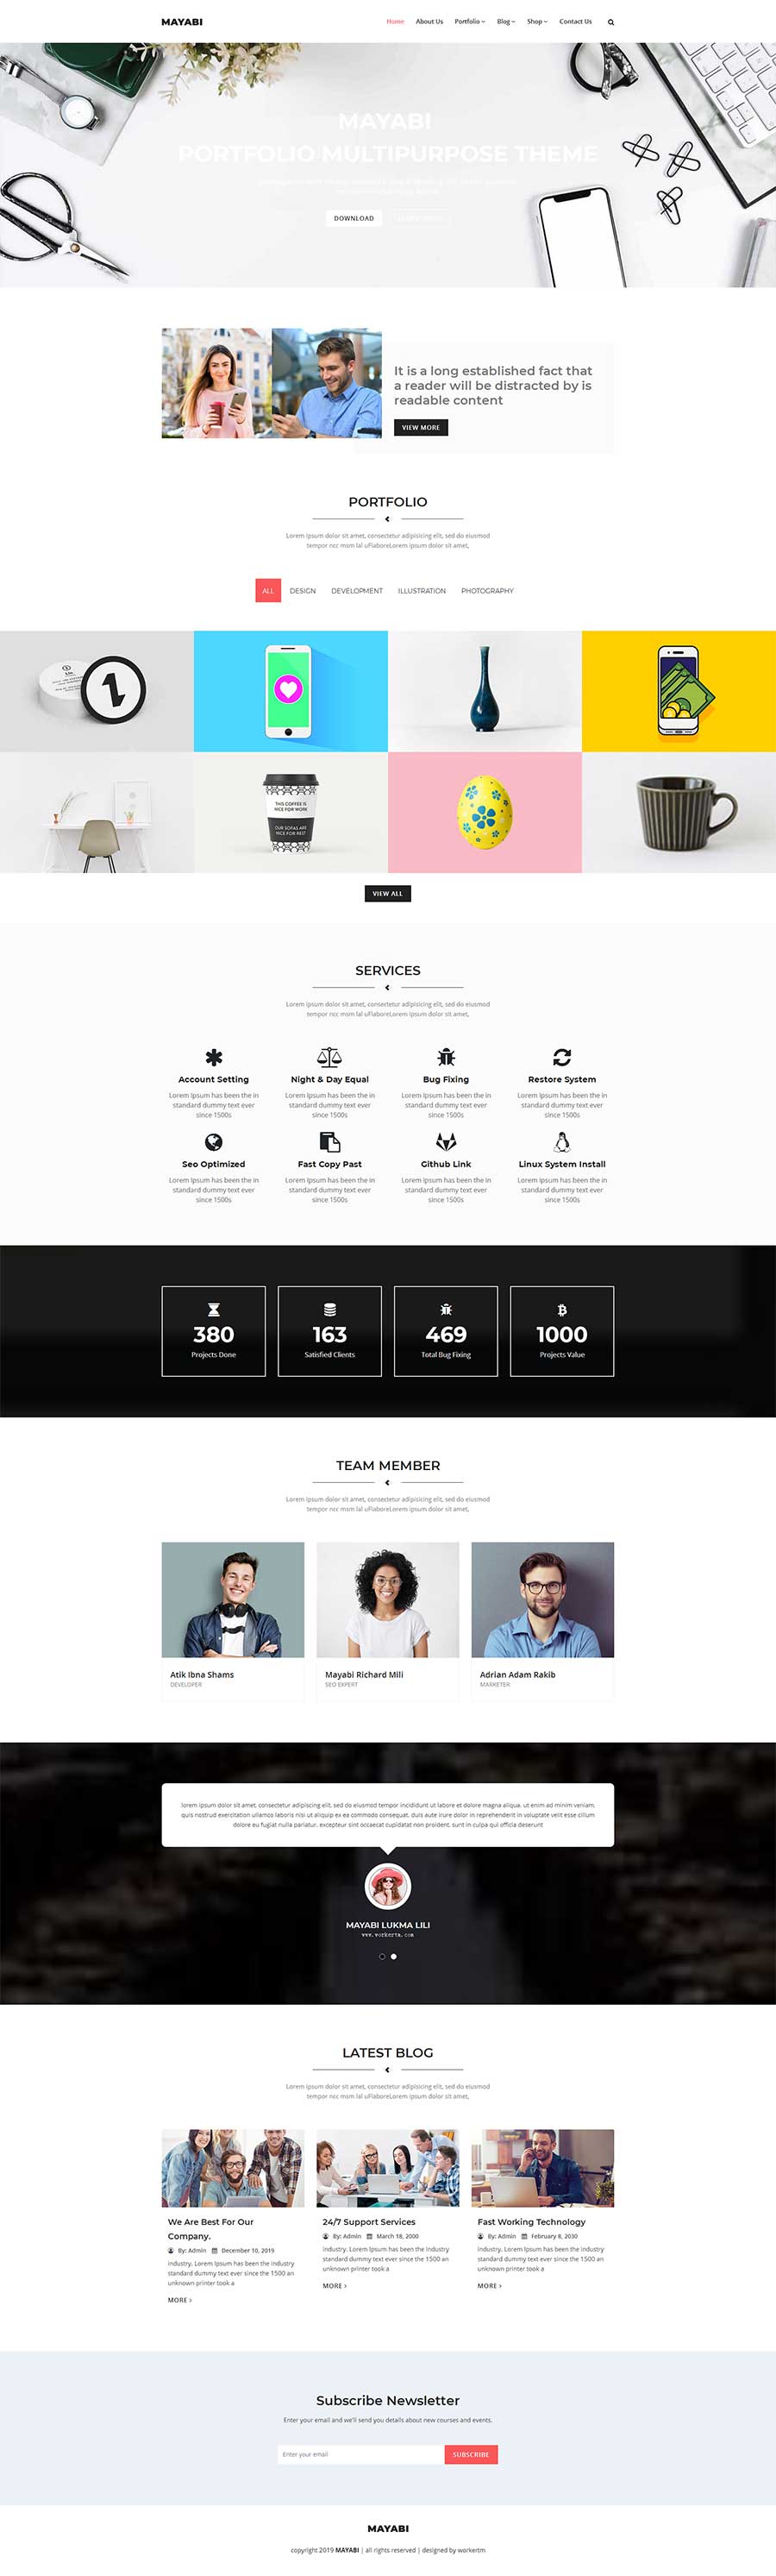 Bootstrap简约大气响应式品牌设计公司网站模板6112